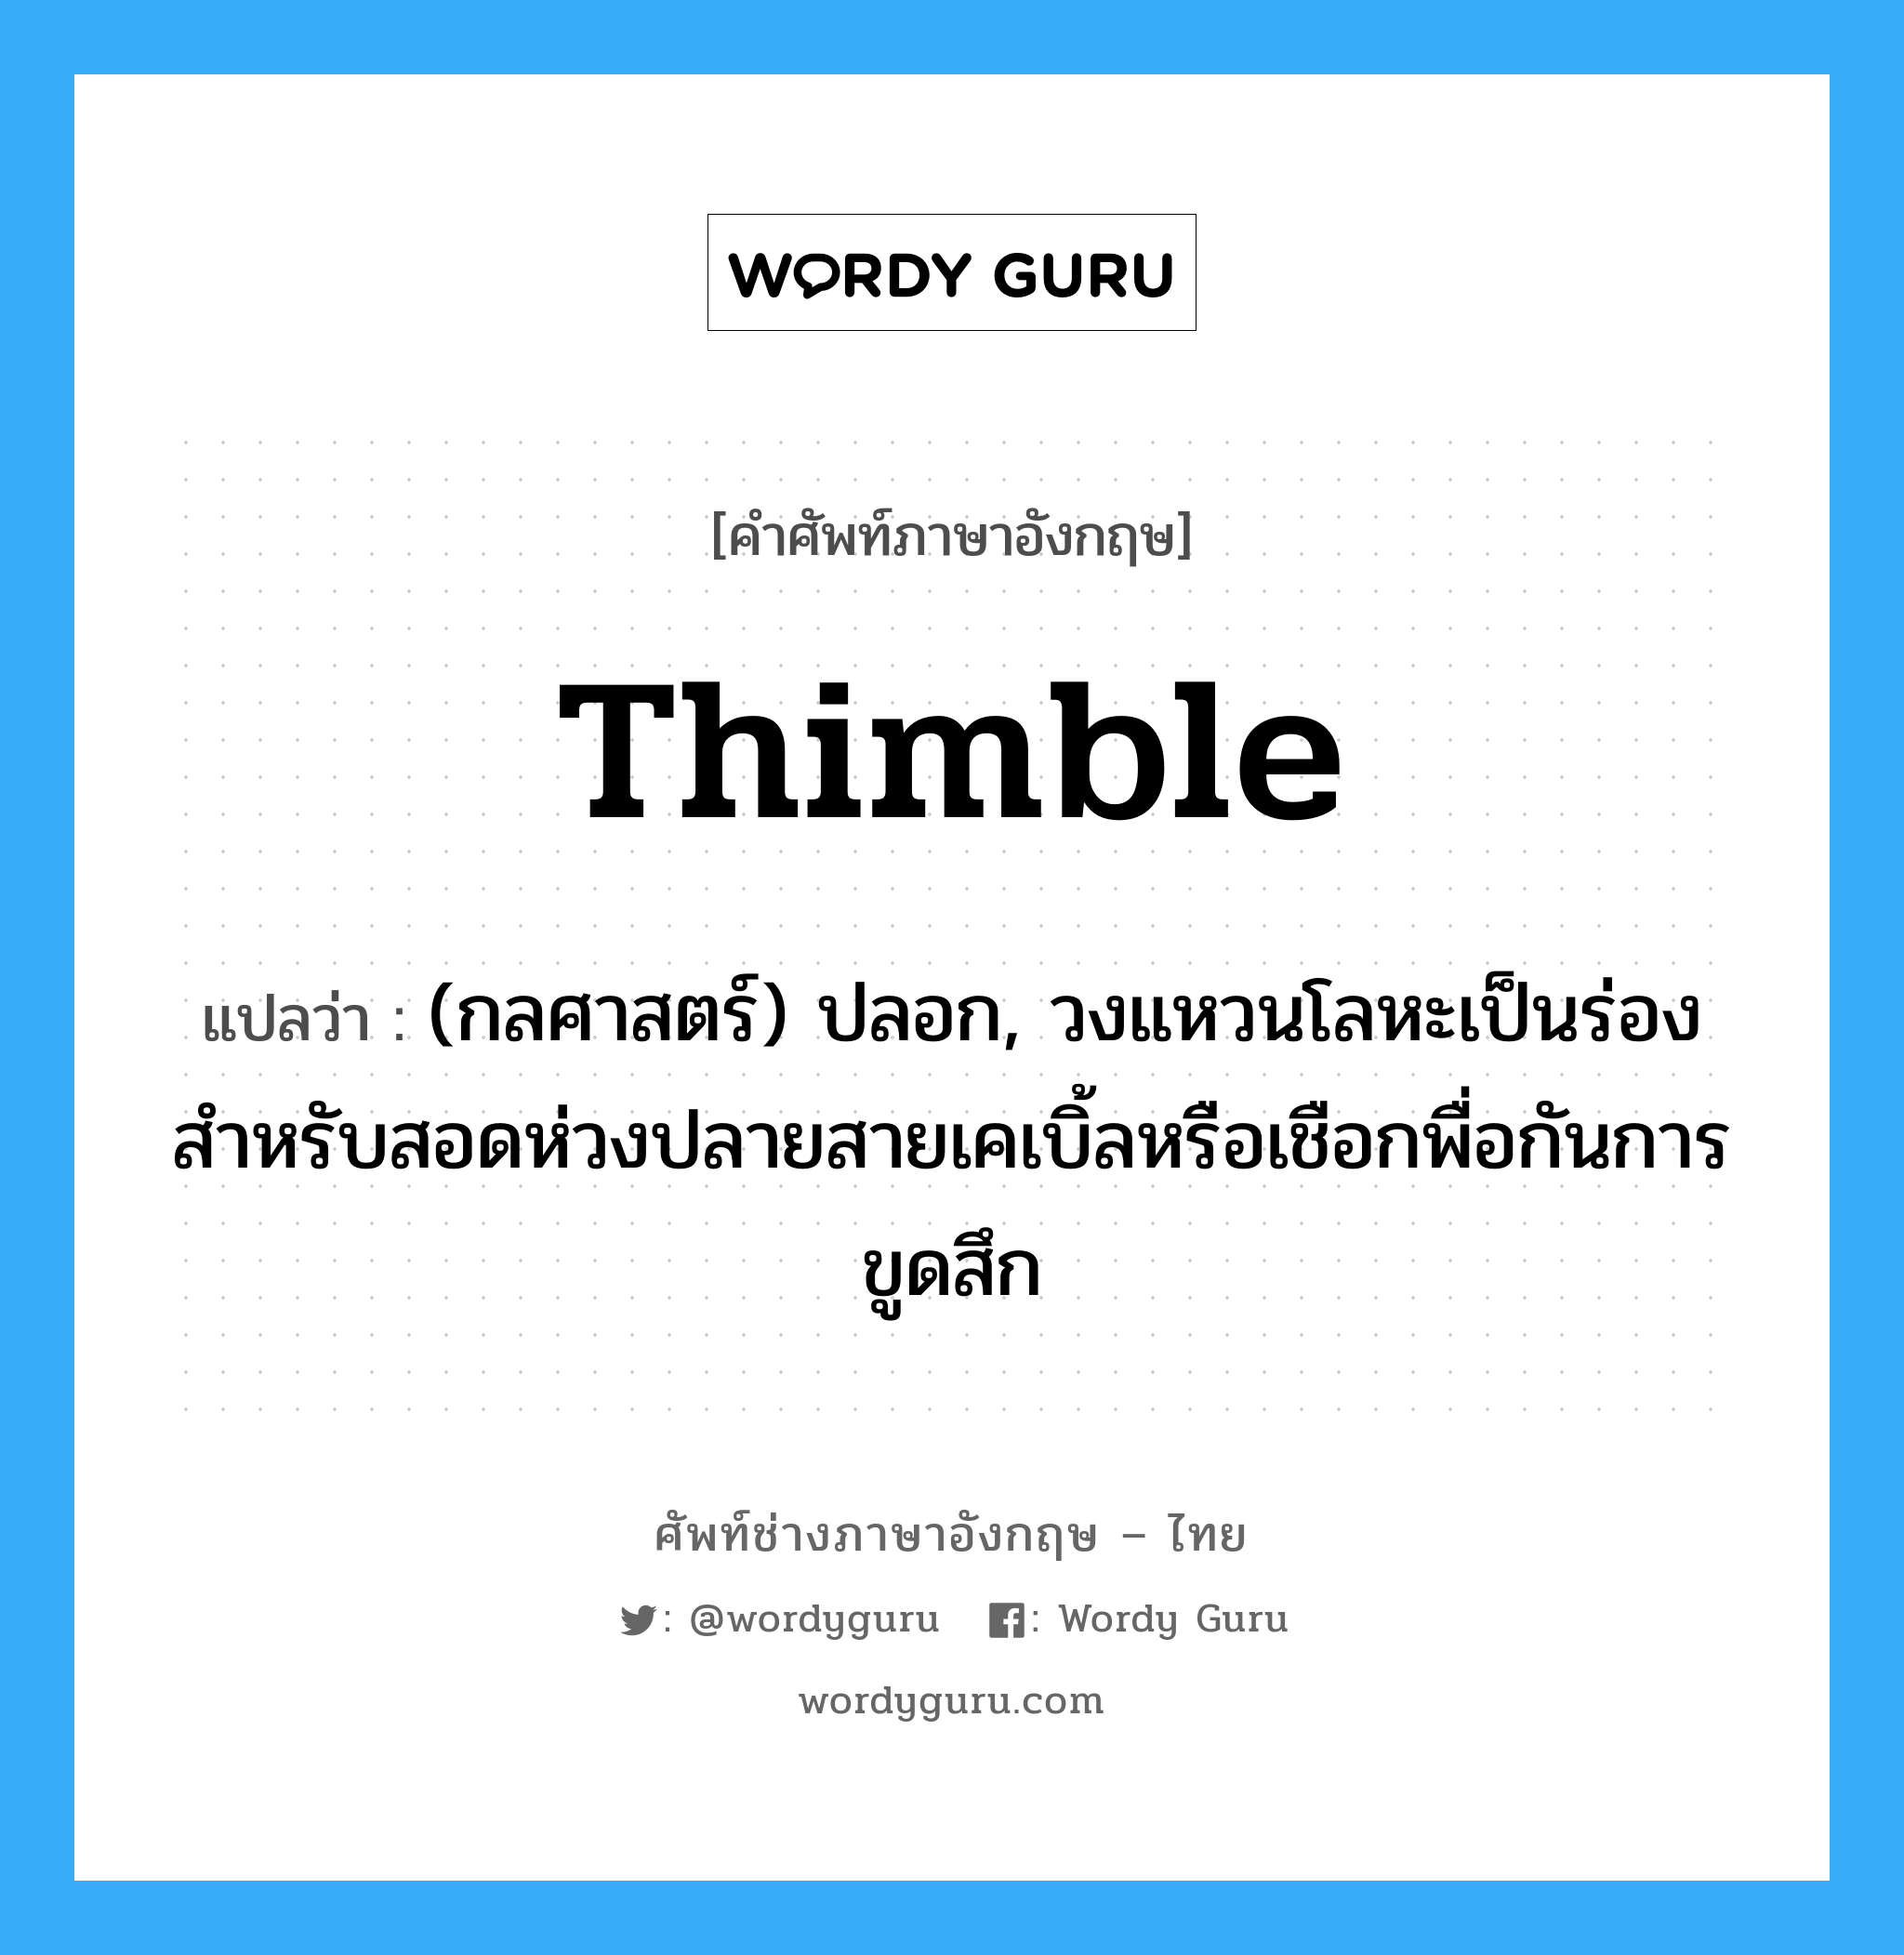 thimble แปลว่า?, คำศัพท์ช่างภาษาอังกฤษ - ไทย thimble คำศัพท์ภาษาอังกฤษ thimble แปลว่า (กลศาสตร์) ปลอก, วงแหวนโลหะเป็นร่องสำหรับสอดห่วงปลายสายเคเบิ้ลหรือเชือกพื่อกันการขูดสึก